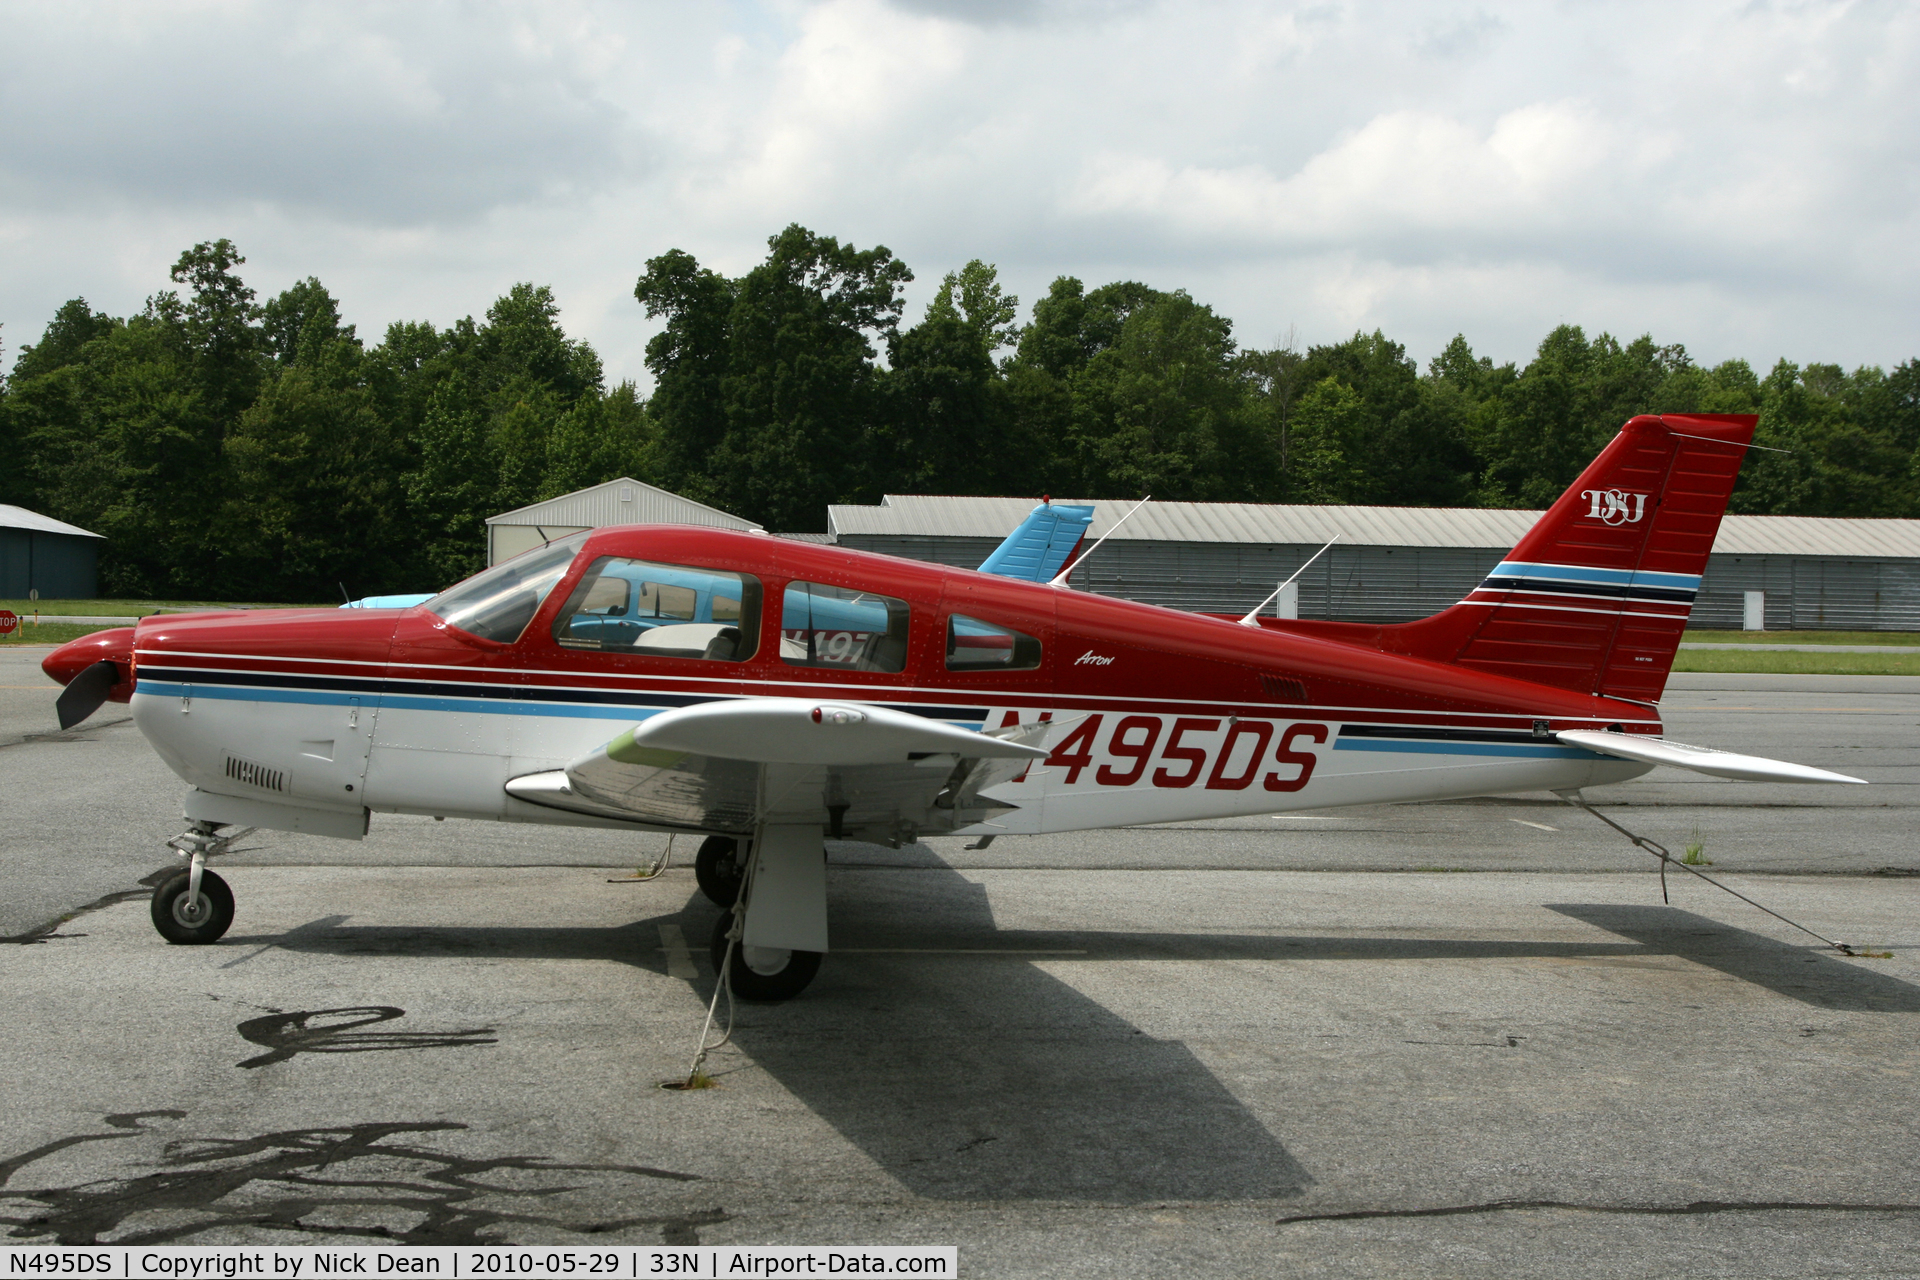 N495DS, 1997 Piper PA-28R-201 Cherokee Arrow III C/N 2844012, 33N